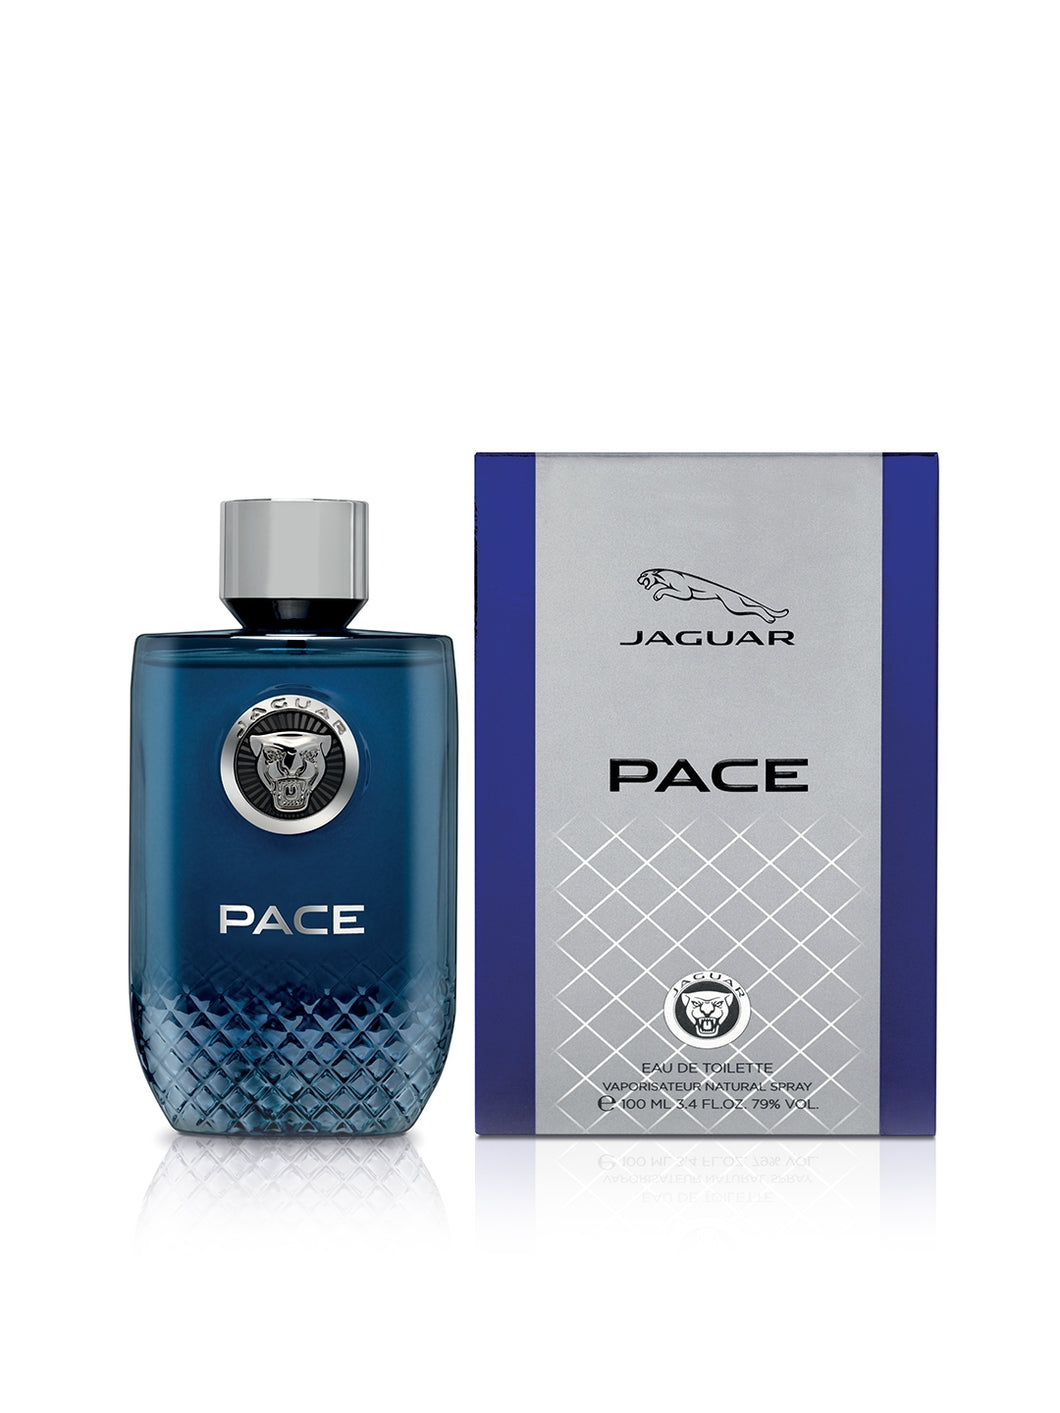 JAGUAR PACE Perfume for Men - 100Ml